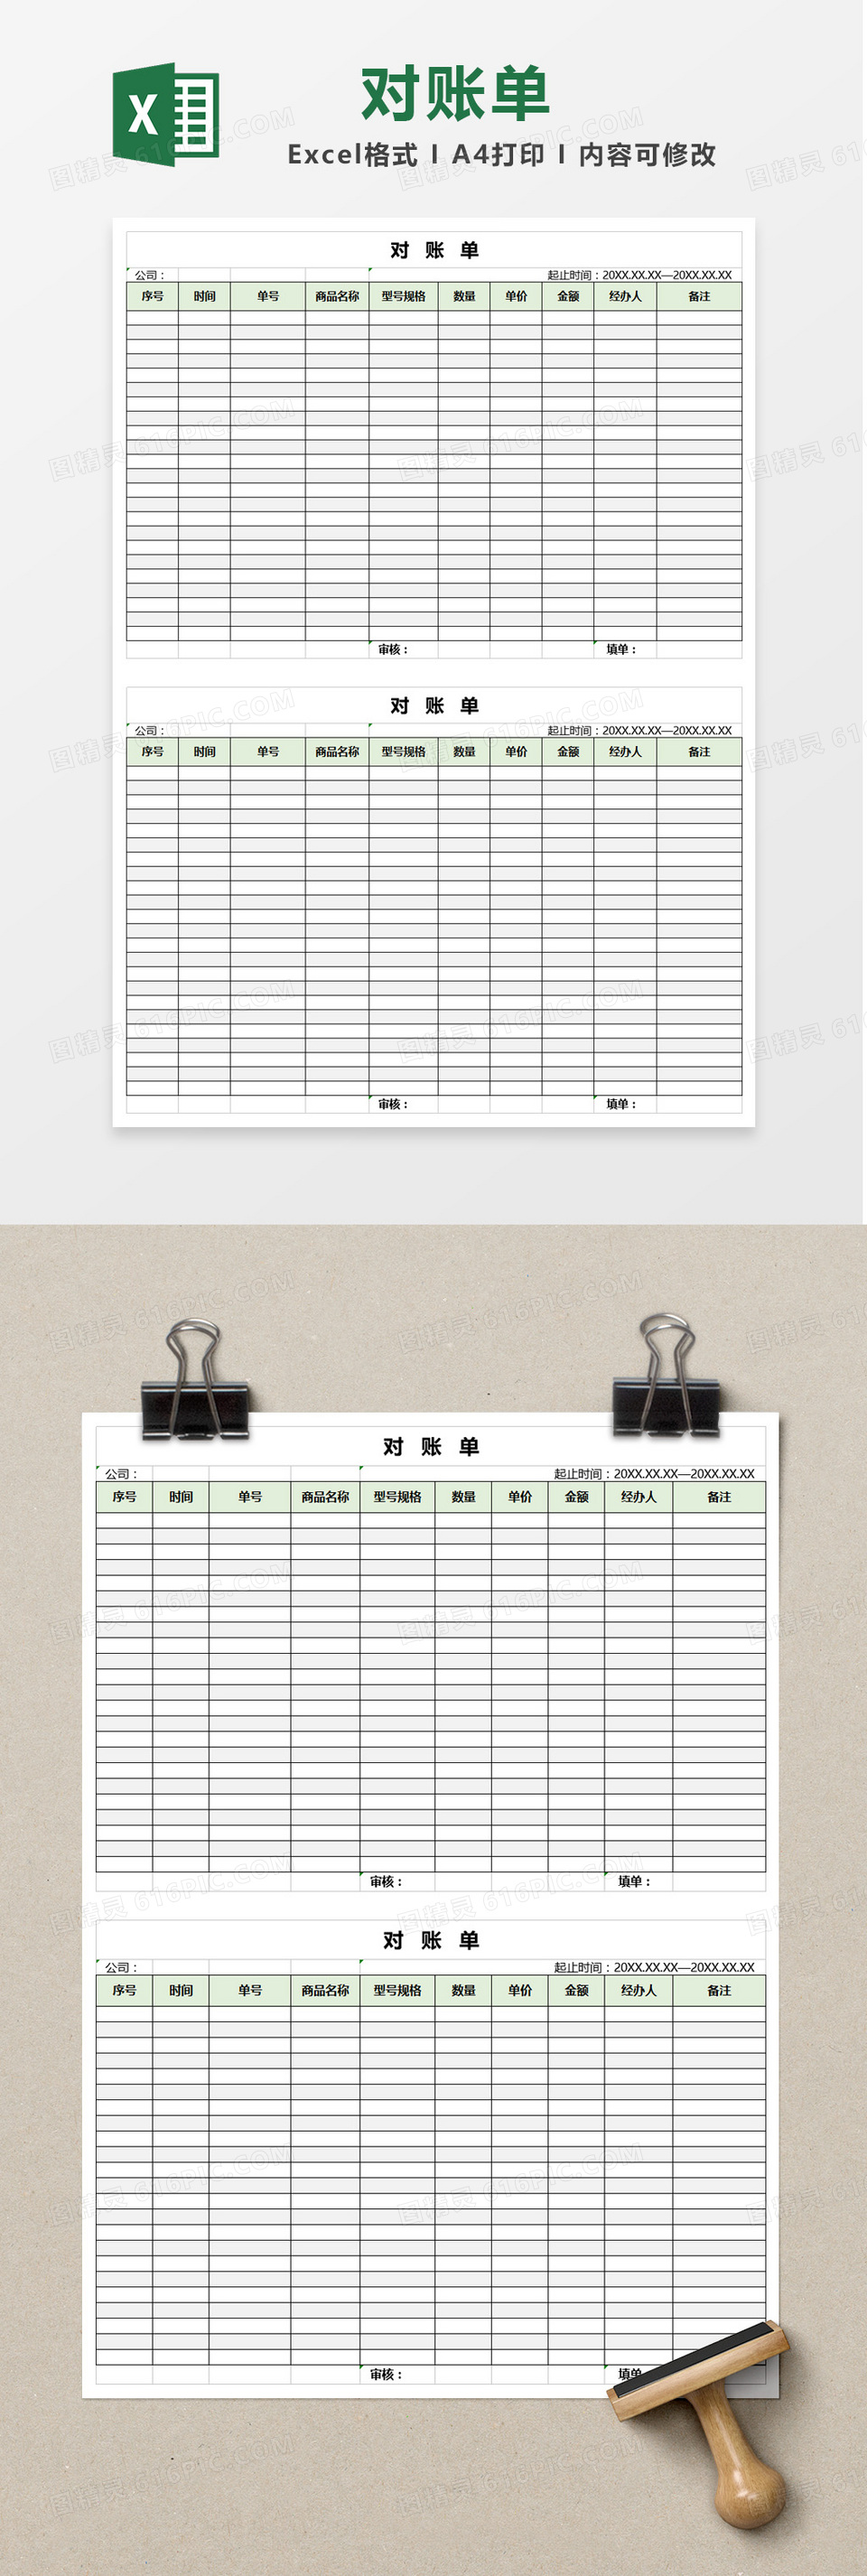 时尚简约公司对账单Excel表格模板